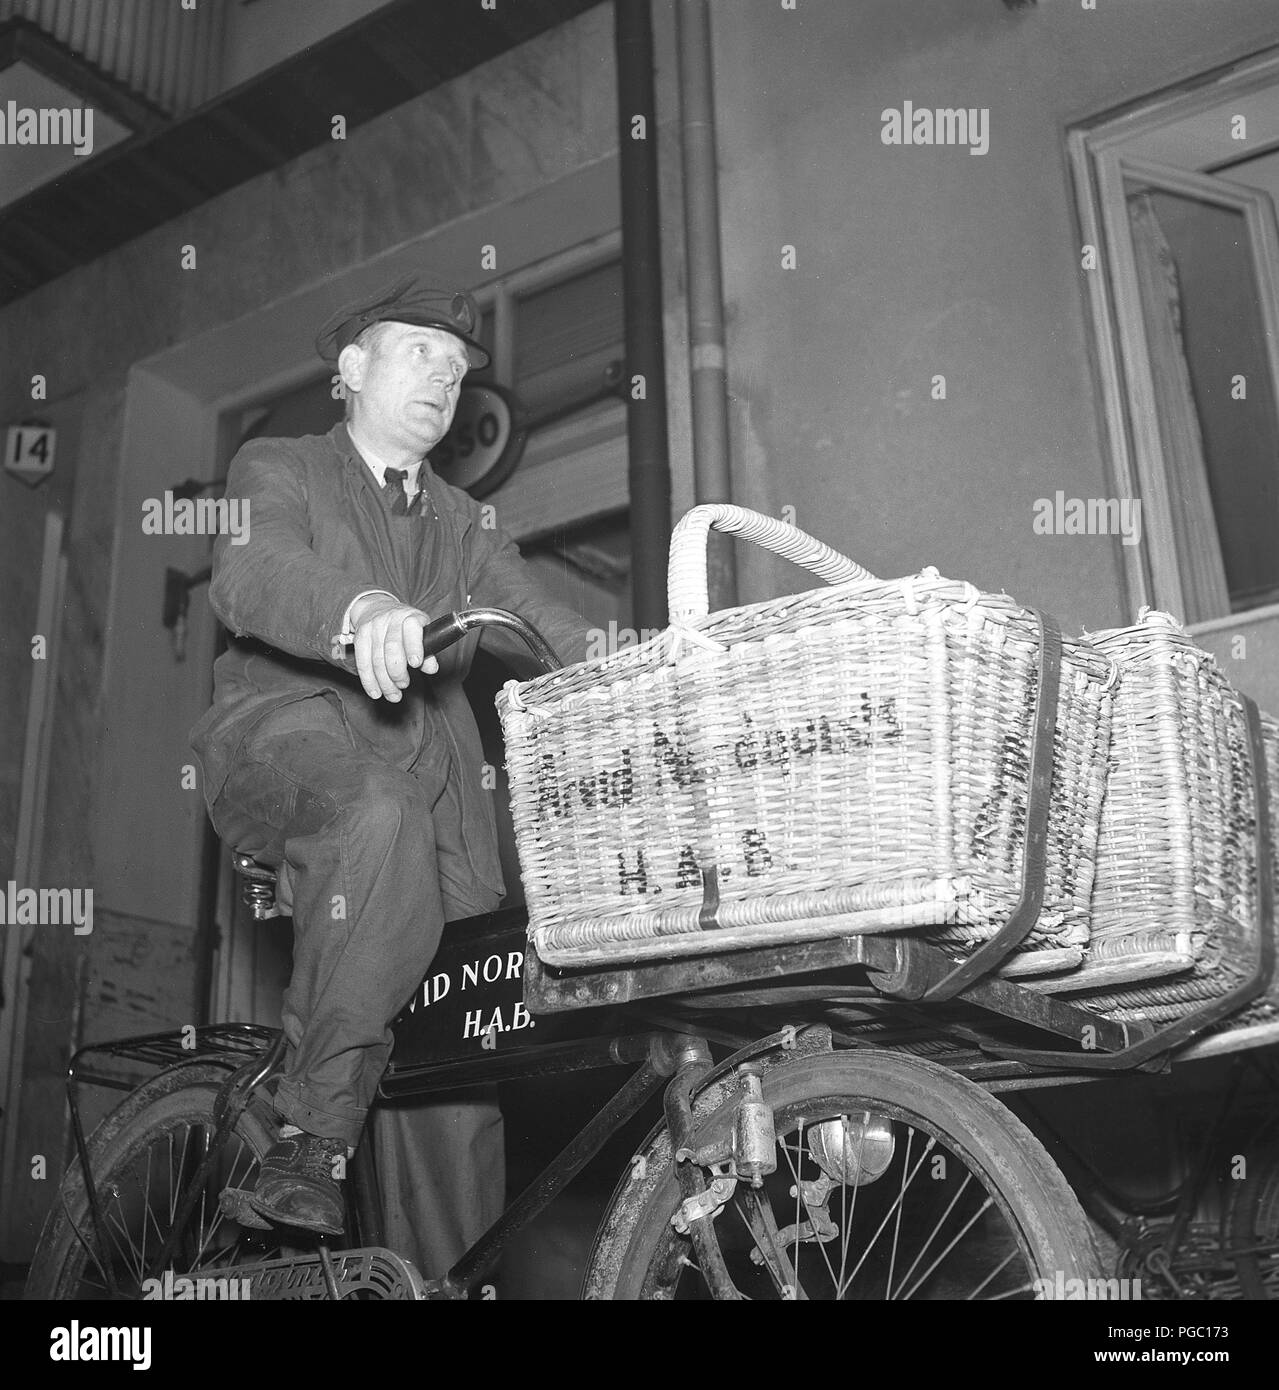 1940 s Transport. Ein älterer Mann als Delivery Man mit Lebensmitteln auf seinem Fahrrad zu den Klienten von der Firma Arvid Nordquist, der geliefert werden soll. Schweden 1940. Foto Kristoffersson A125-1 Stockfoto